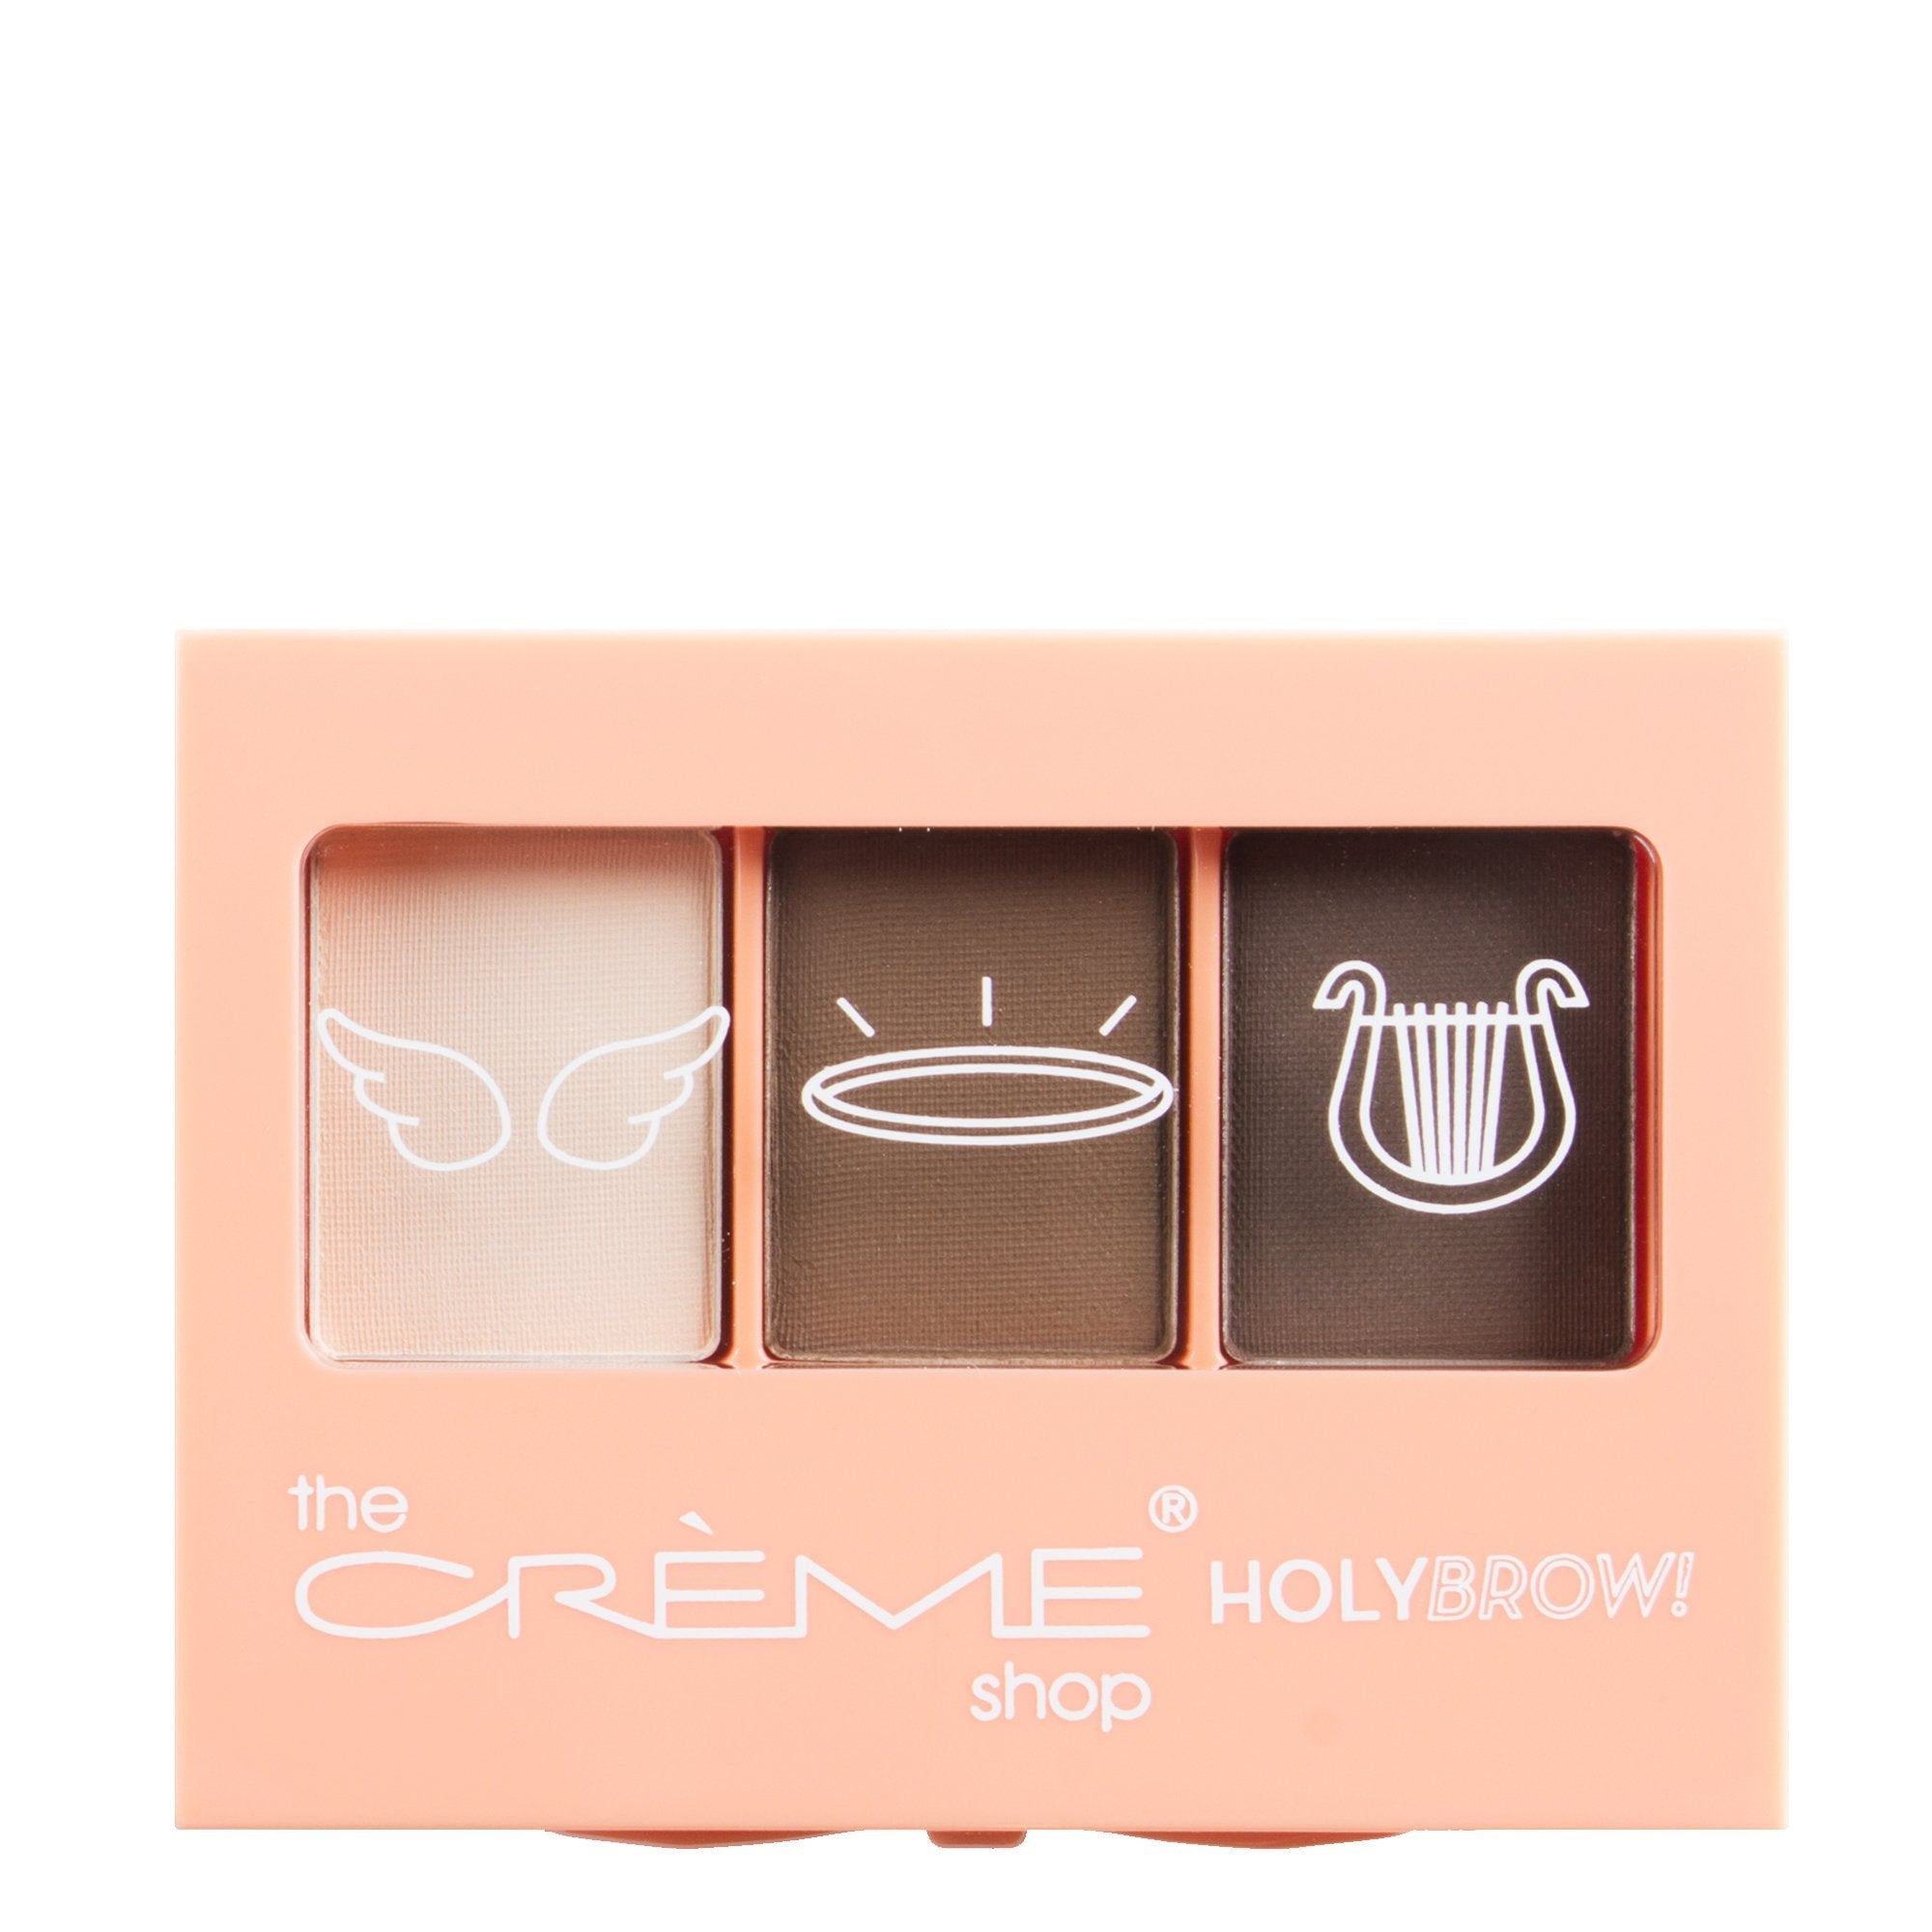 "Holy Brow!" Eyebrow Trio with Brush + Spooley Medium - The Crème Shop